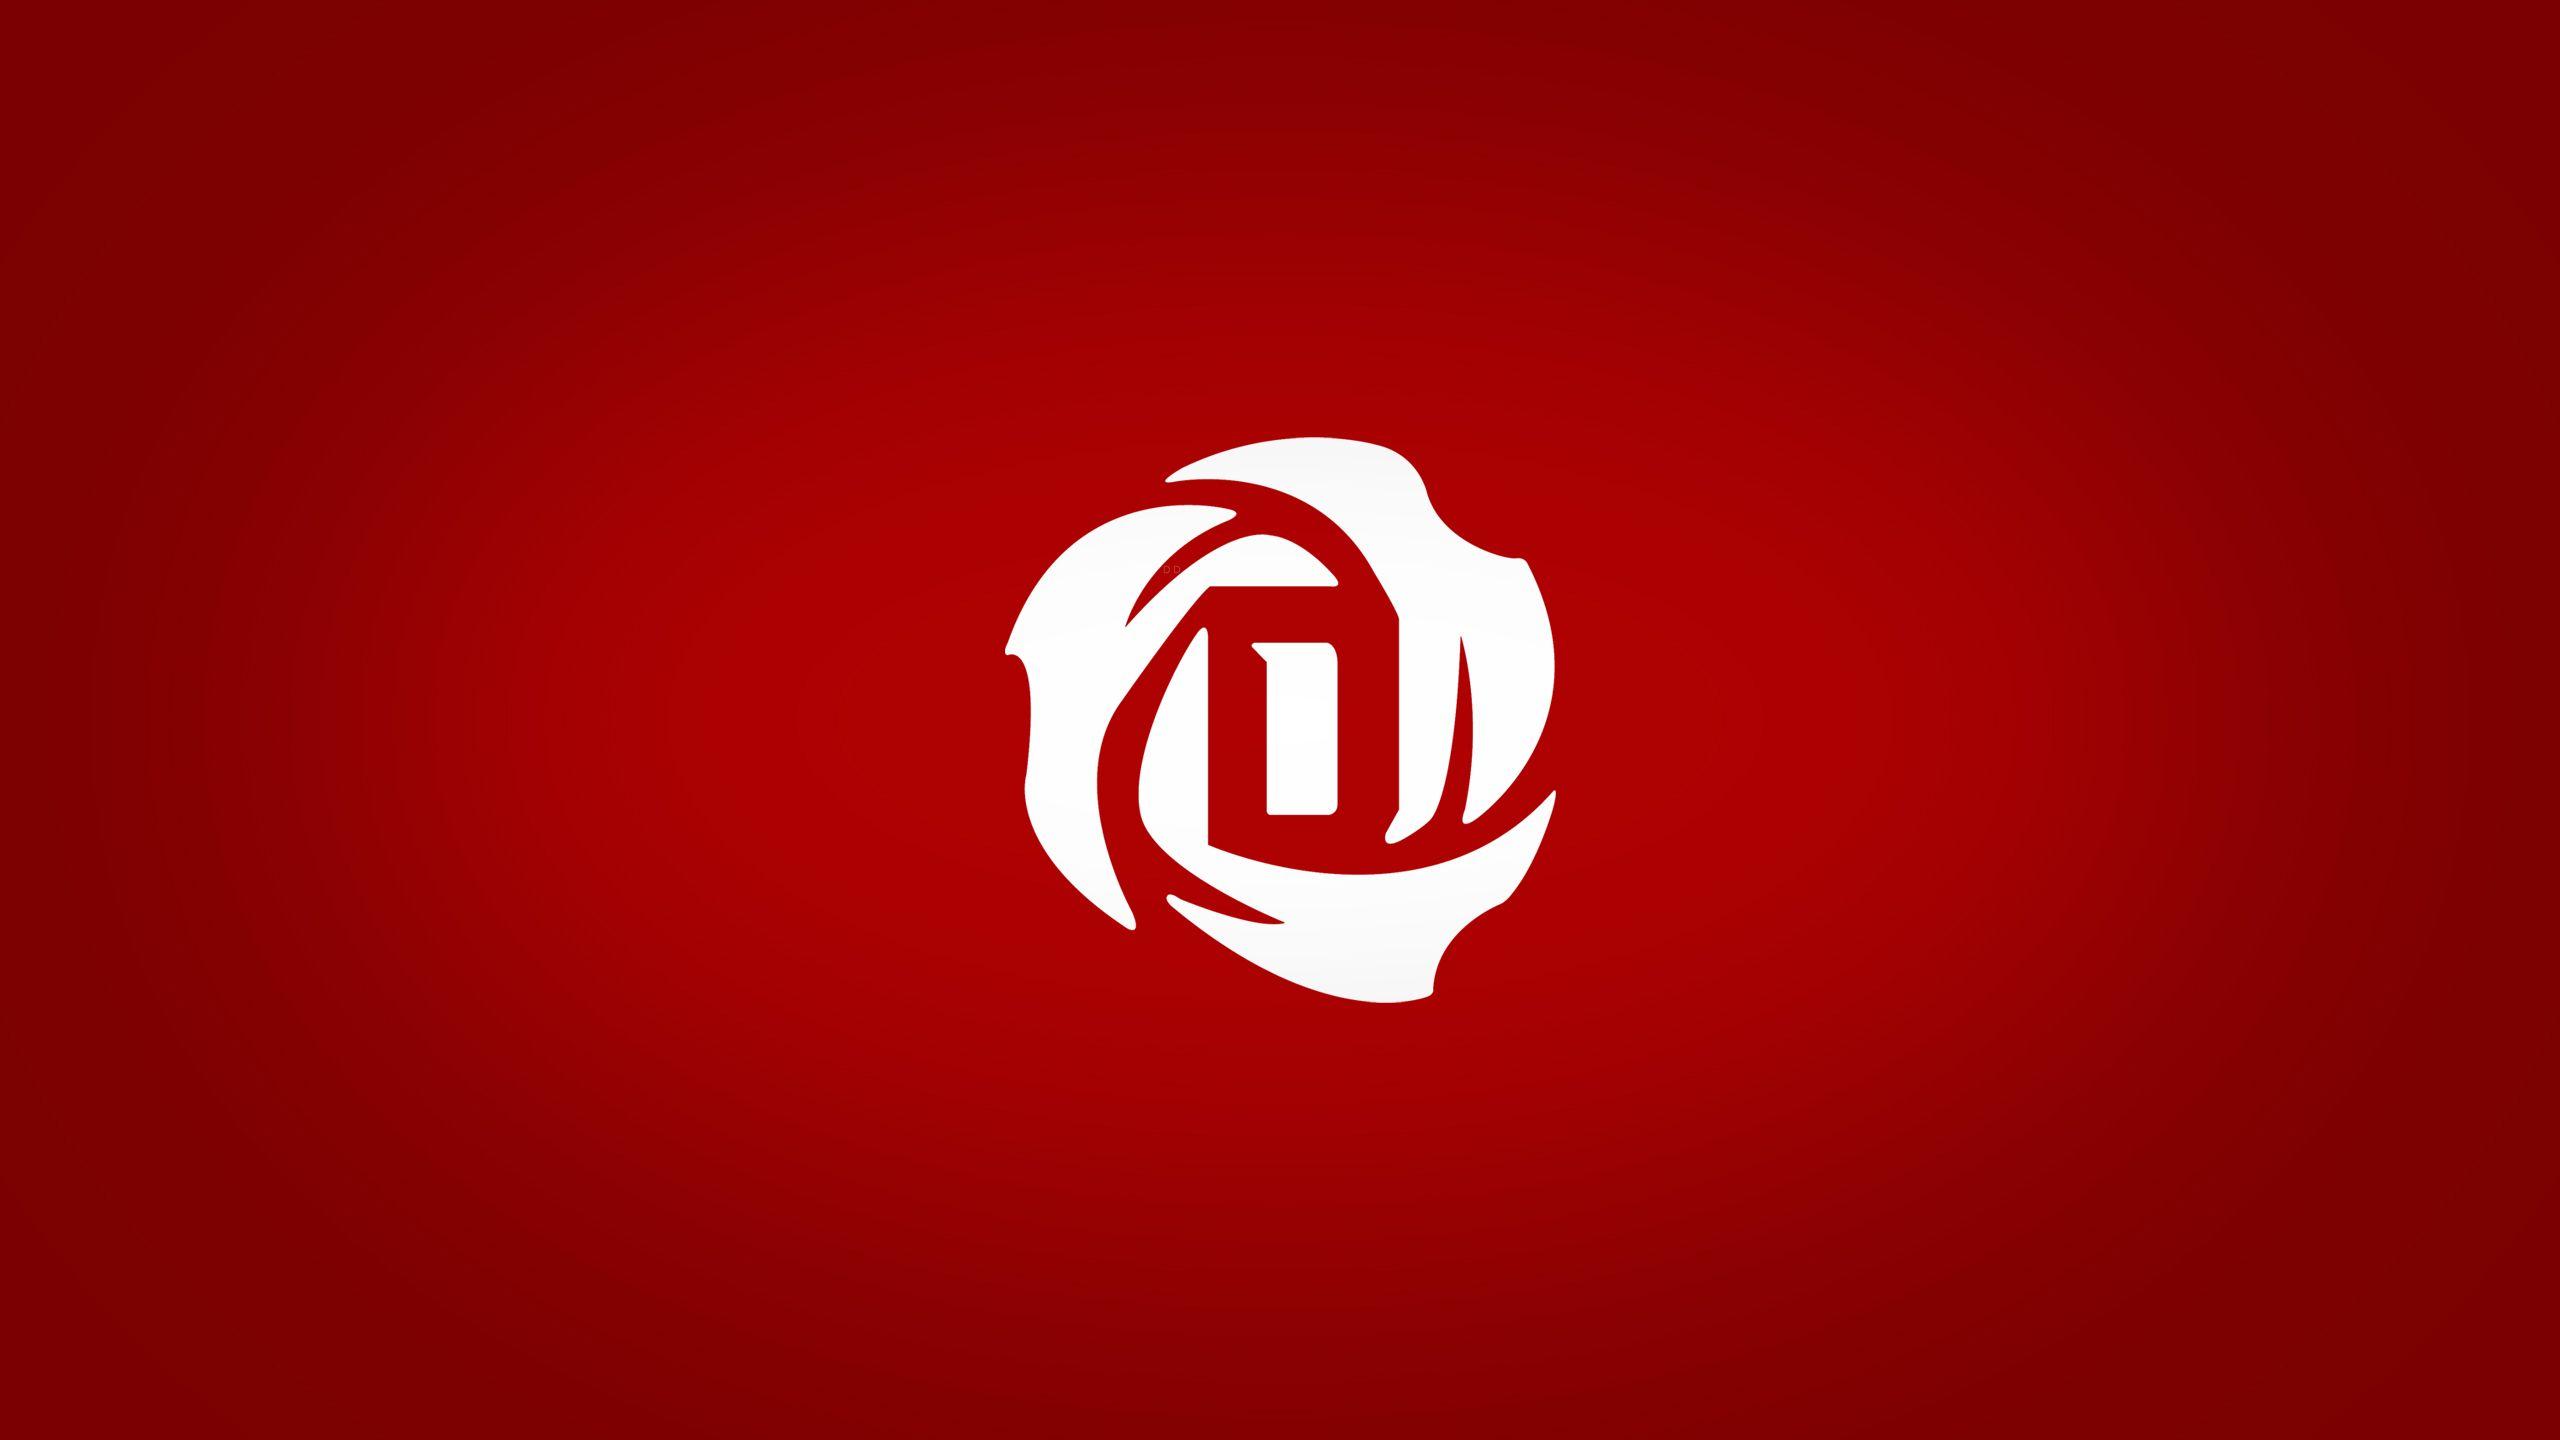 derrick rose logo png